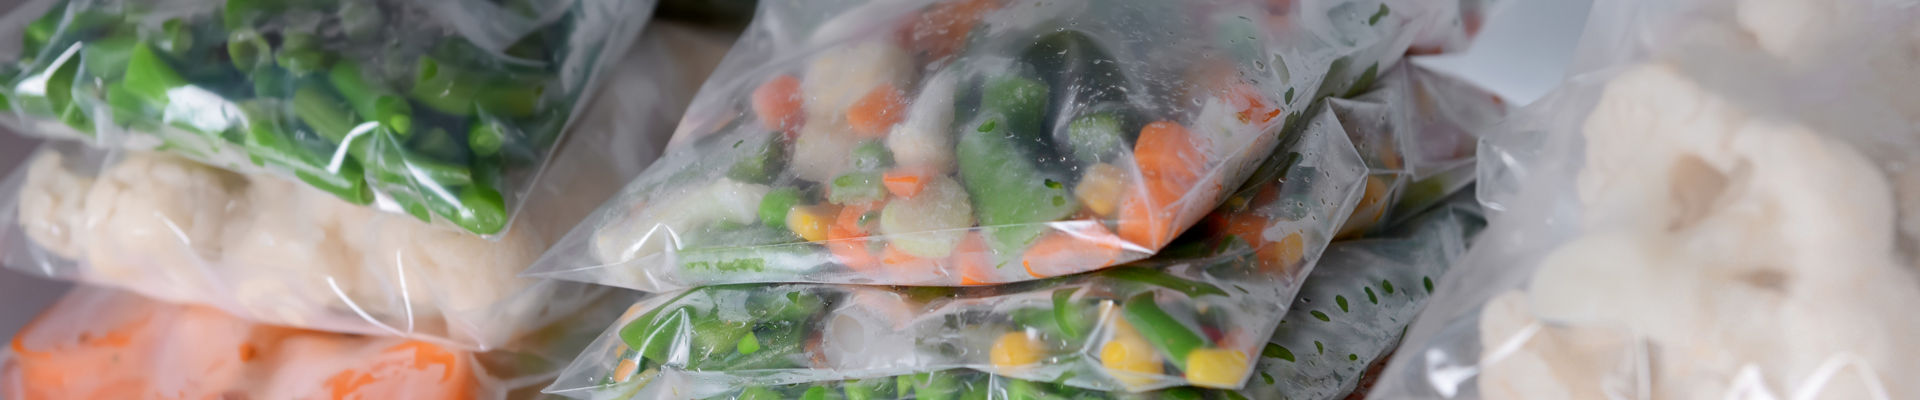 带有 RETAIN™ 标识的冷冻柜中的冷冻蔬菜